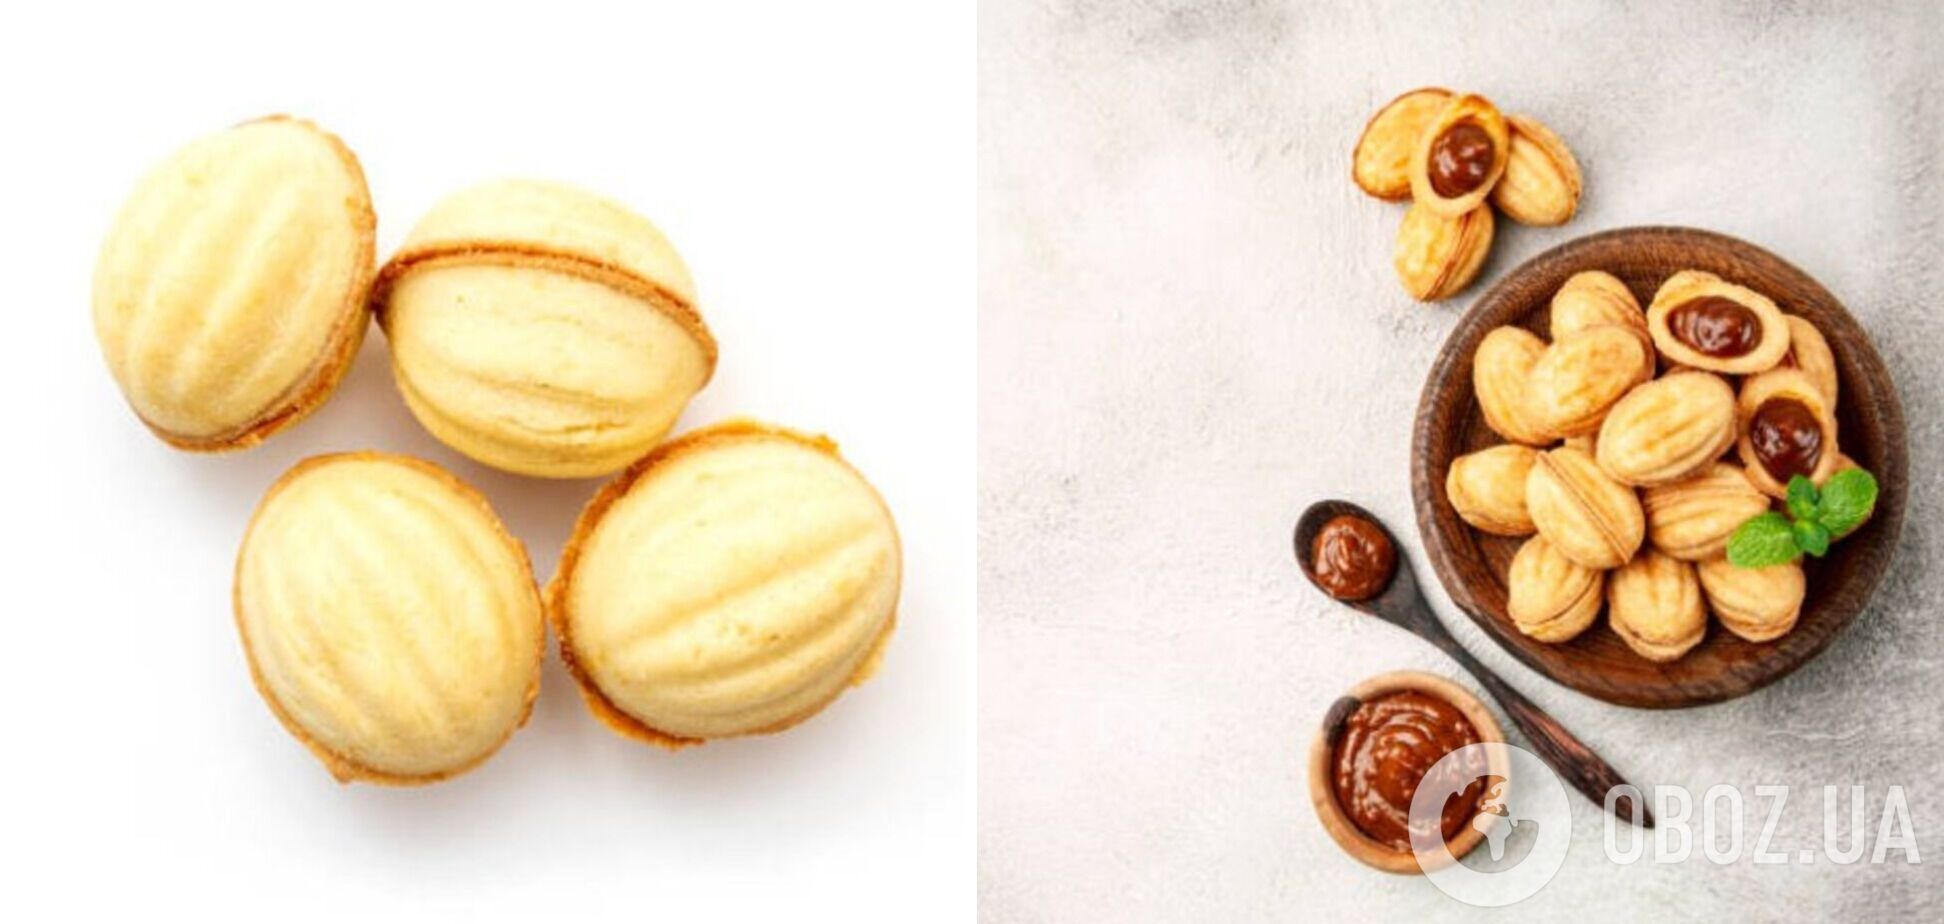 Орешки со сгущенкой в домашних условиях: самый простой рецепт печенья